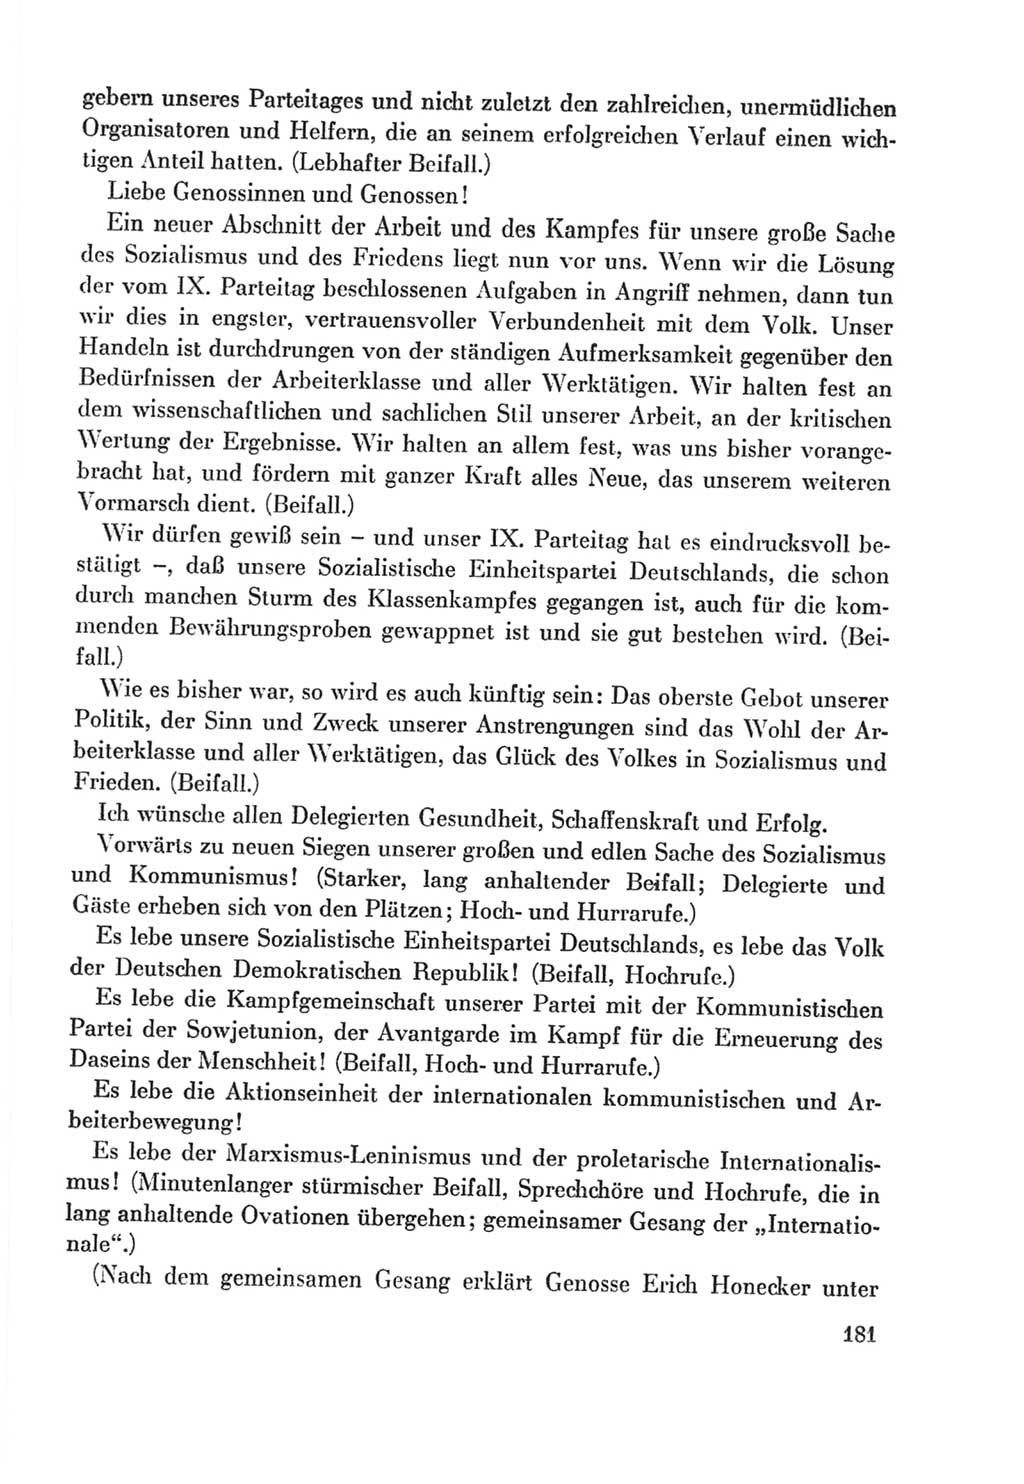 Protokoll der Verhandlungen des Ⅸ. Parteitages der Sozialistischen Einheitspartei Deutschlands (SED) [Deutsche Demokratische Republik (DDR)] 1976, Band 2, Seite 181 (Prot. Verh. Ⅸ. PT SED DDR 1976, Bd. 2, S. 181)